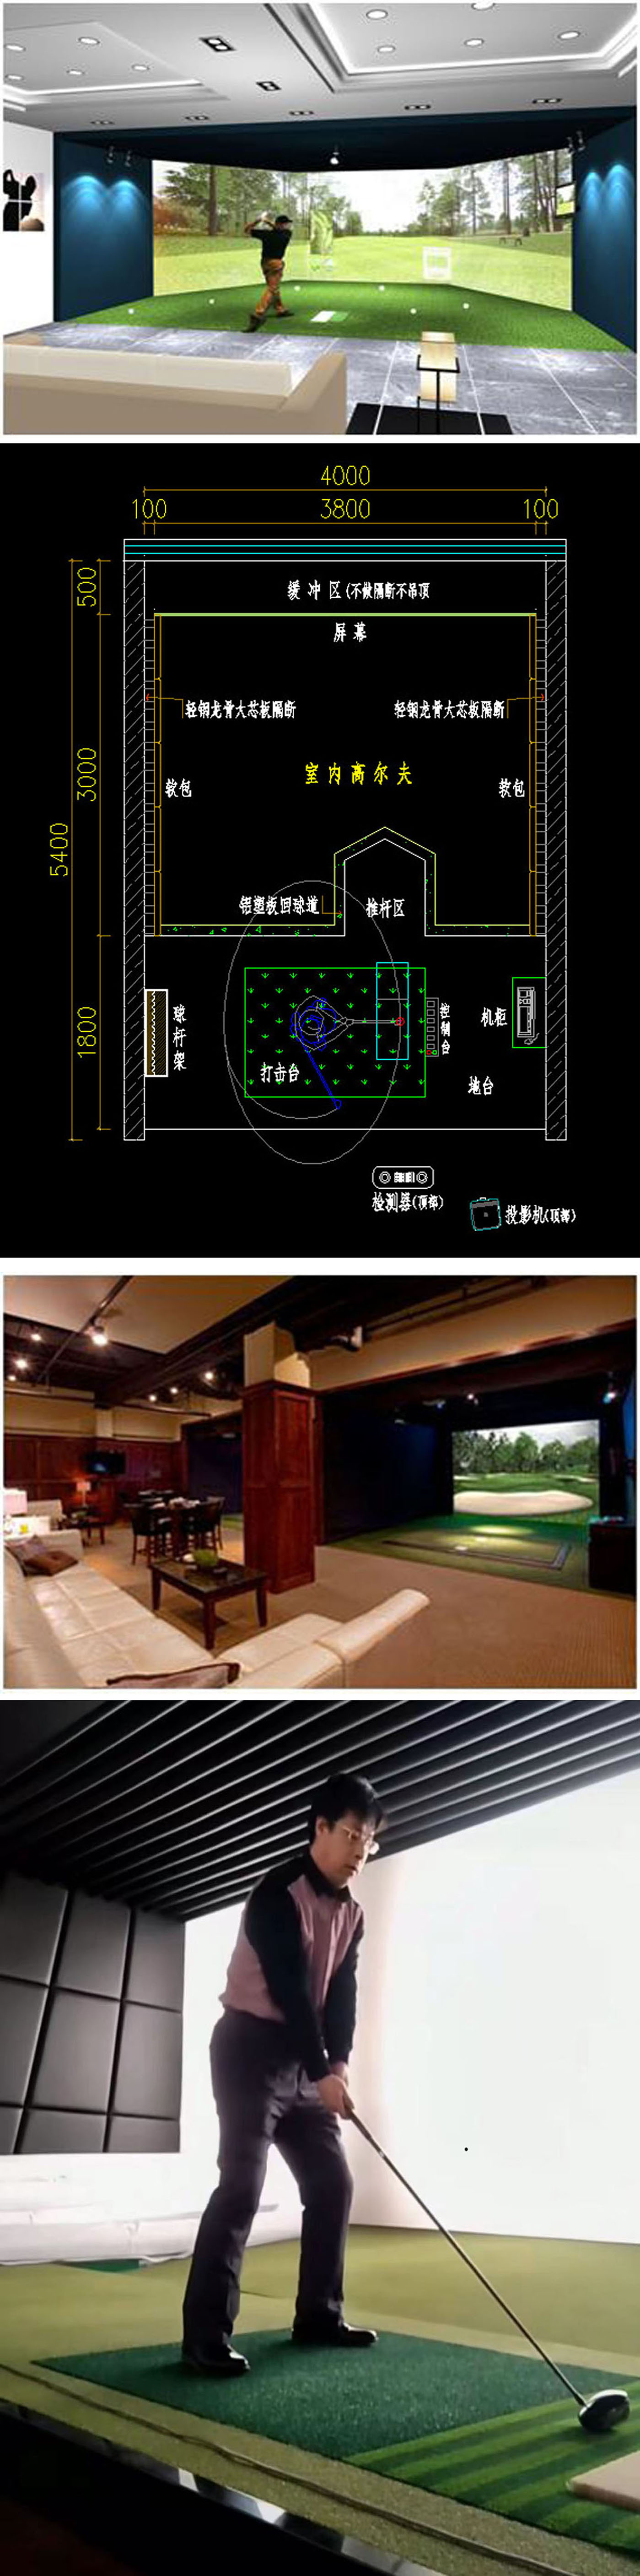 室内高尔夫模拟软件 03.jpg